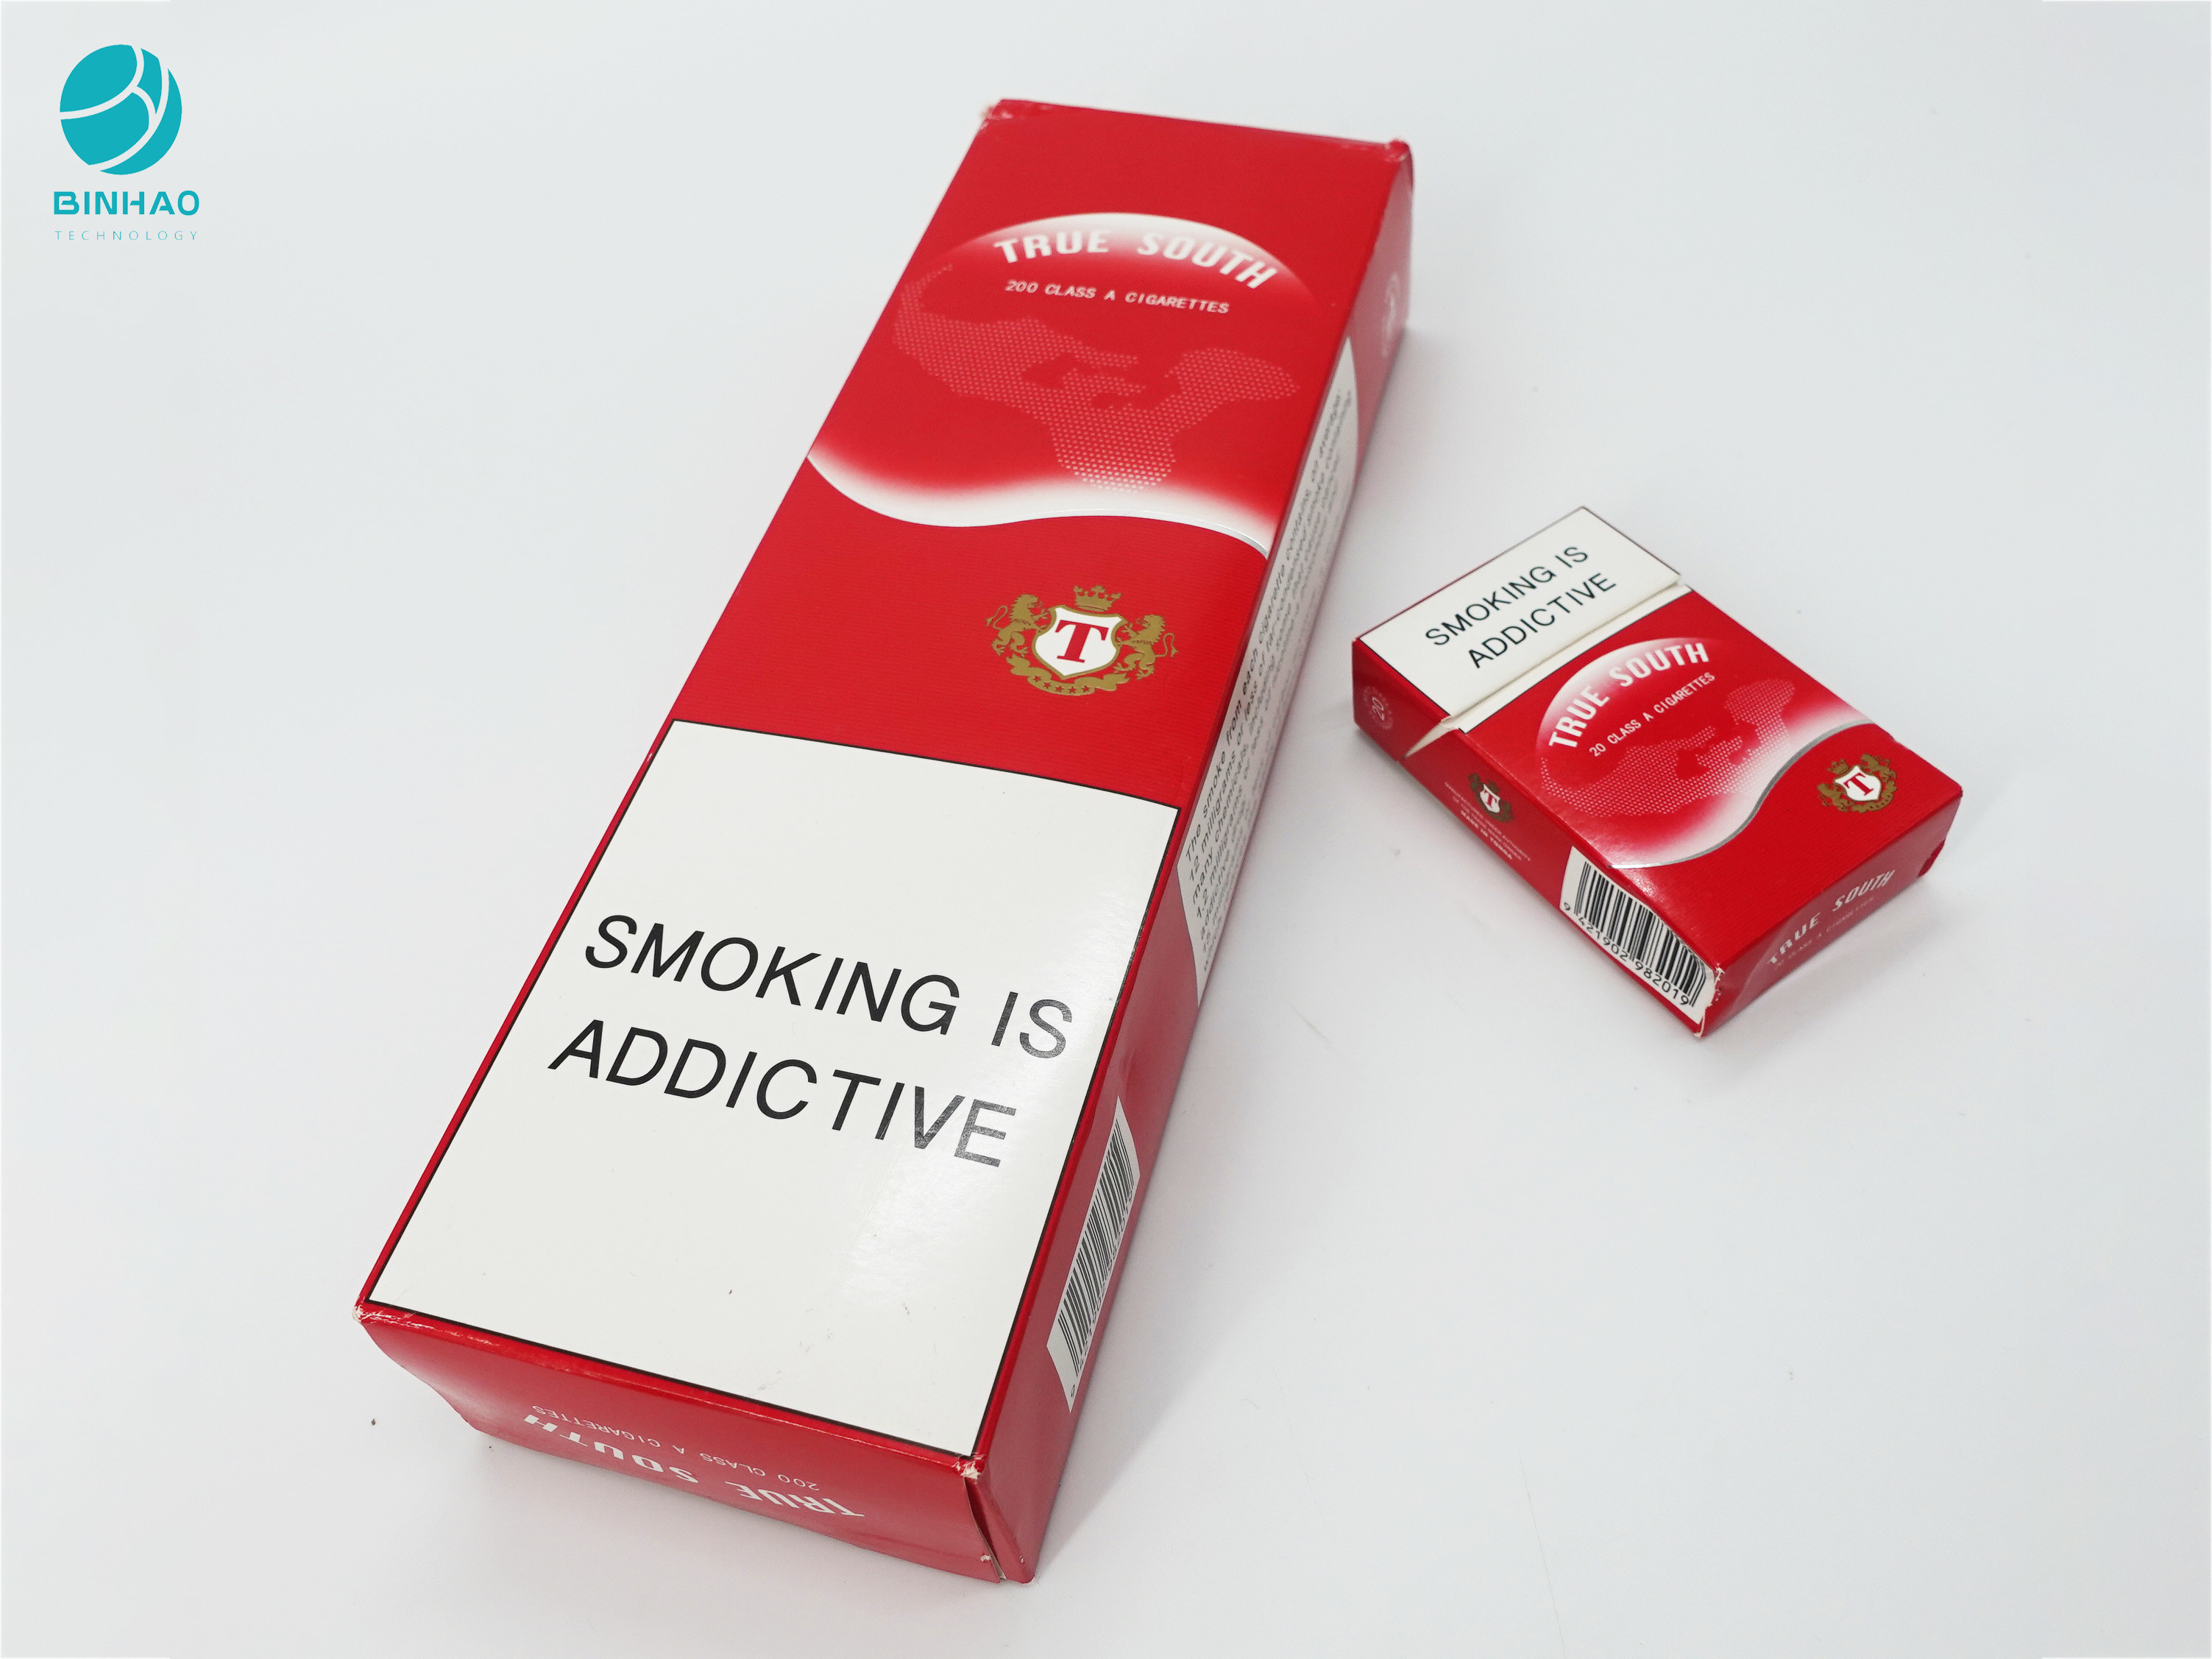 Caixas duráveis do papel do cartão do projeto vermelho para o empacotamento da caixa do cigarro de cigarro